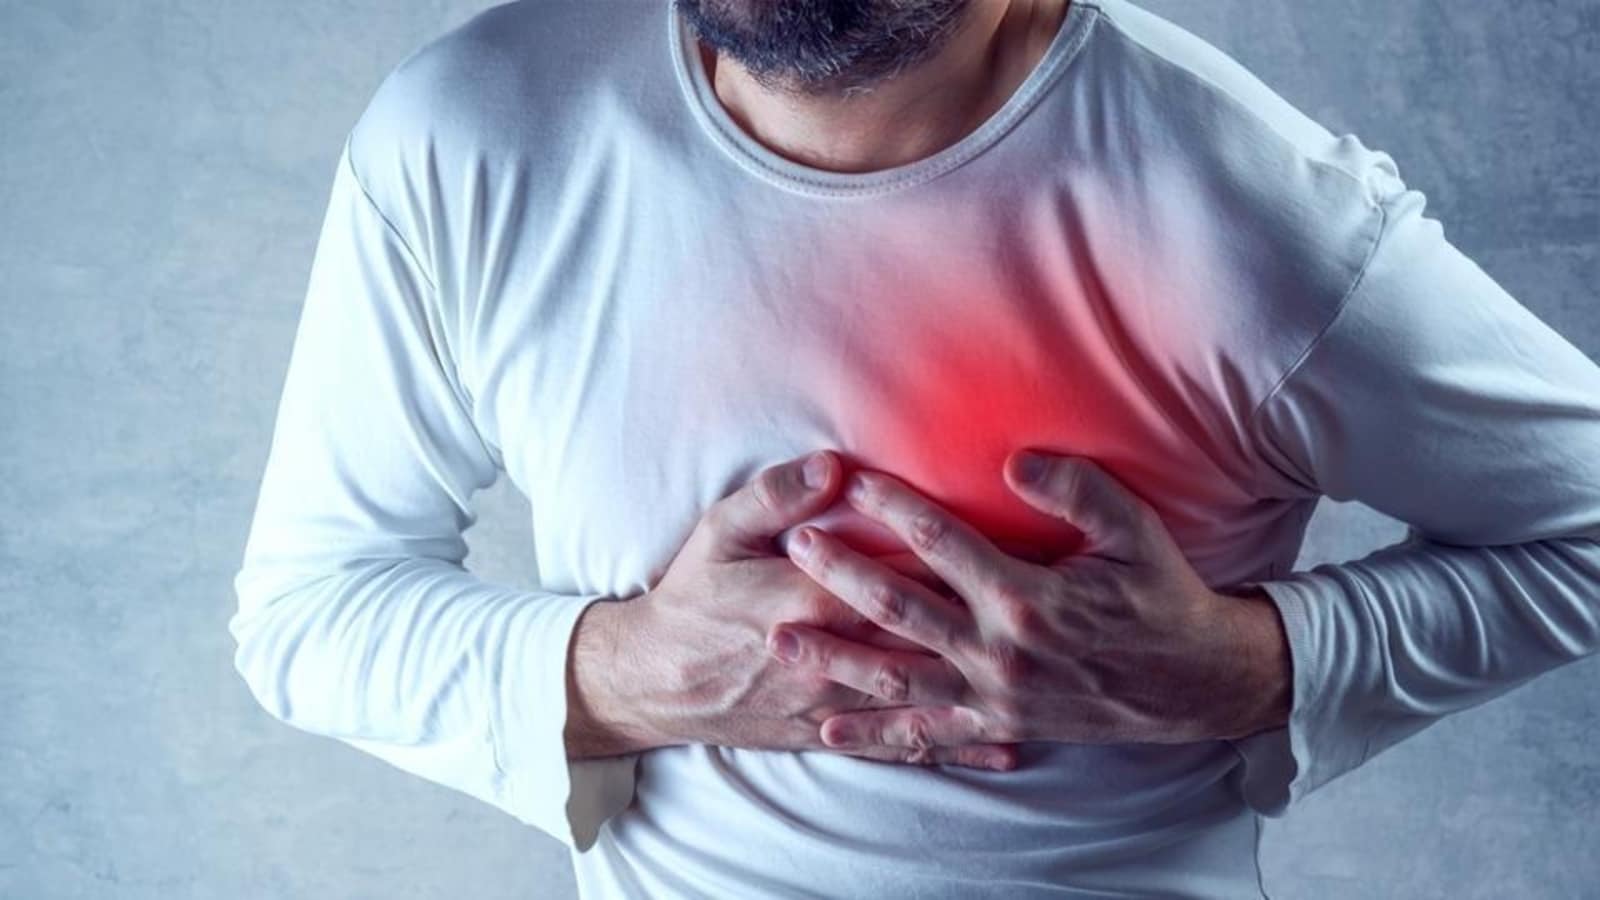 Hałas komunikacyjny może zwiększać ryzyko chorób układu krążenia, takich jak zawał serca, cukrzyca, udar mózgu: badania |  Zdrowie